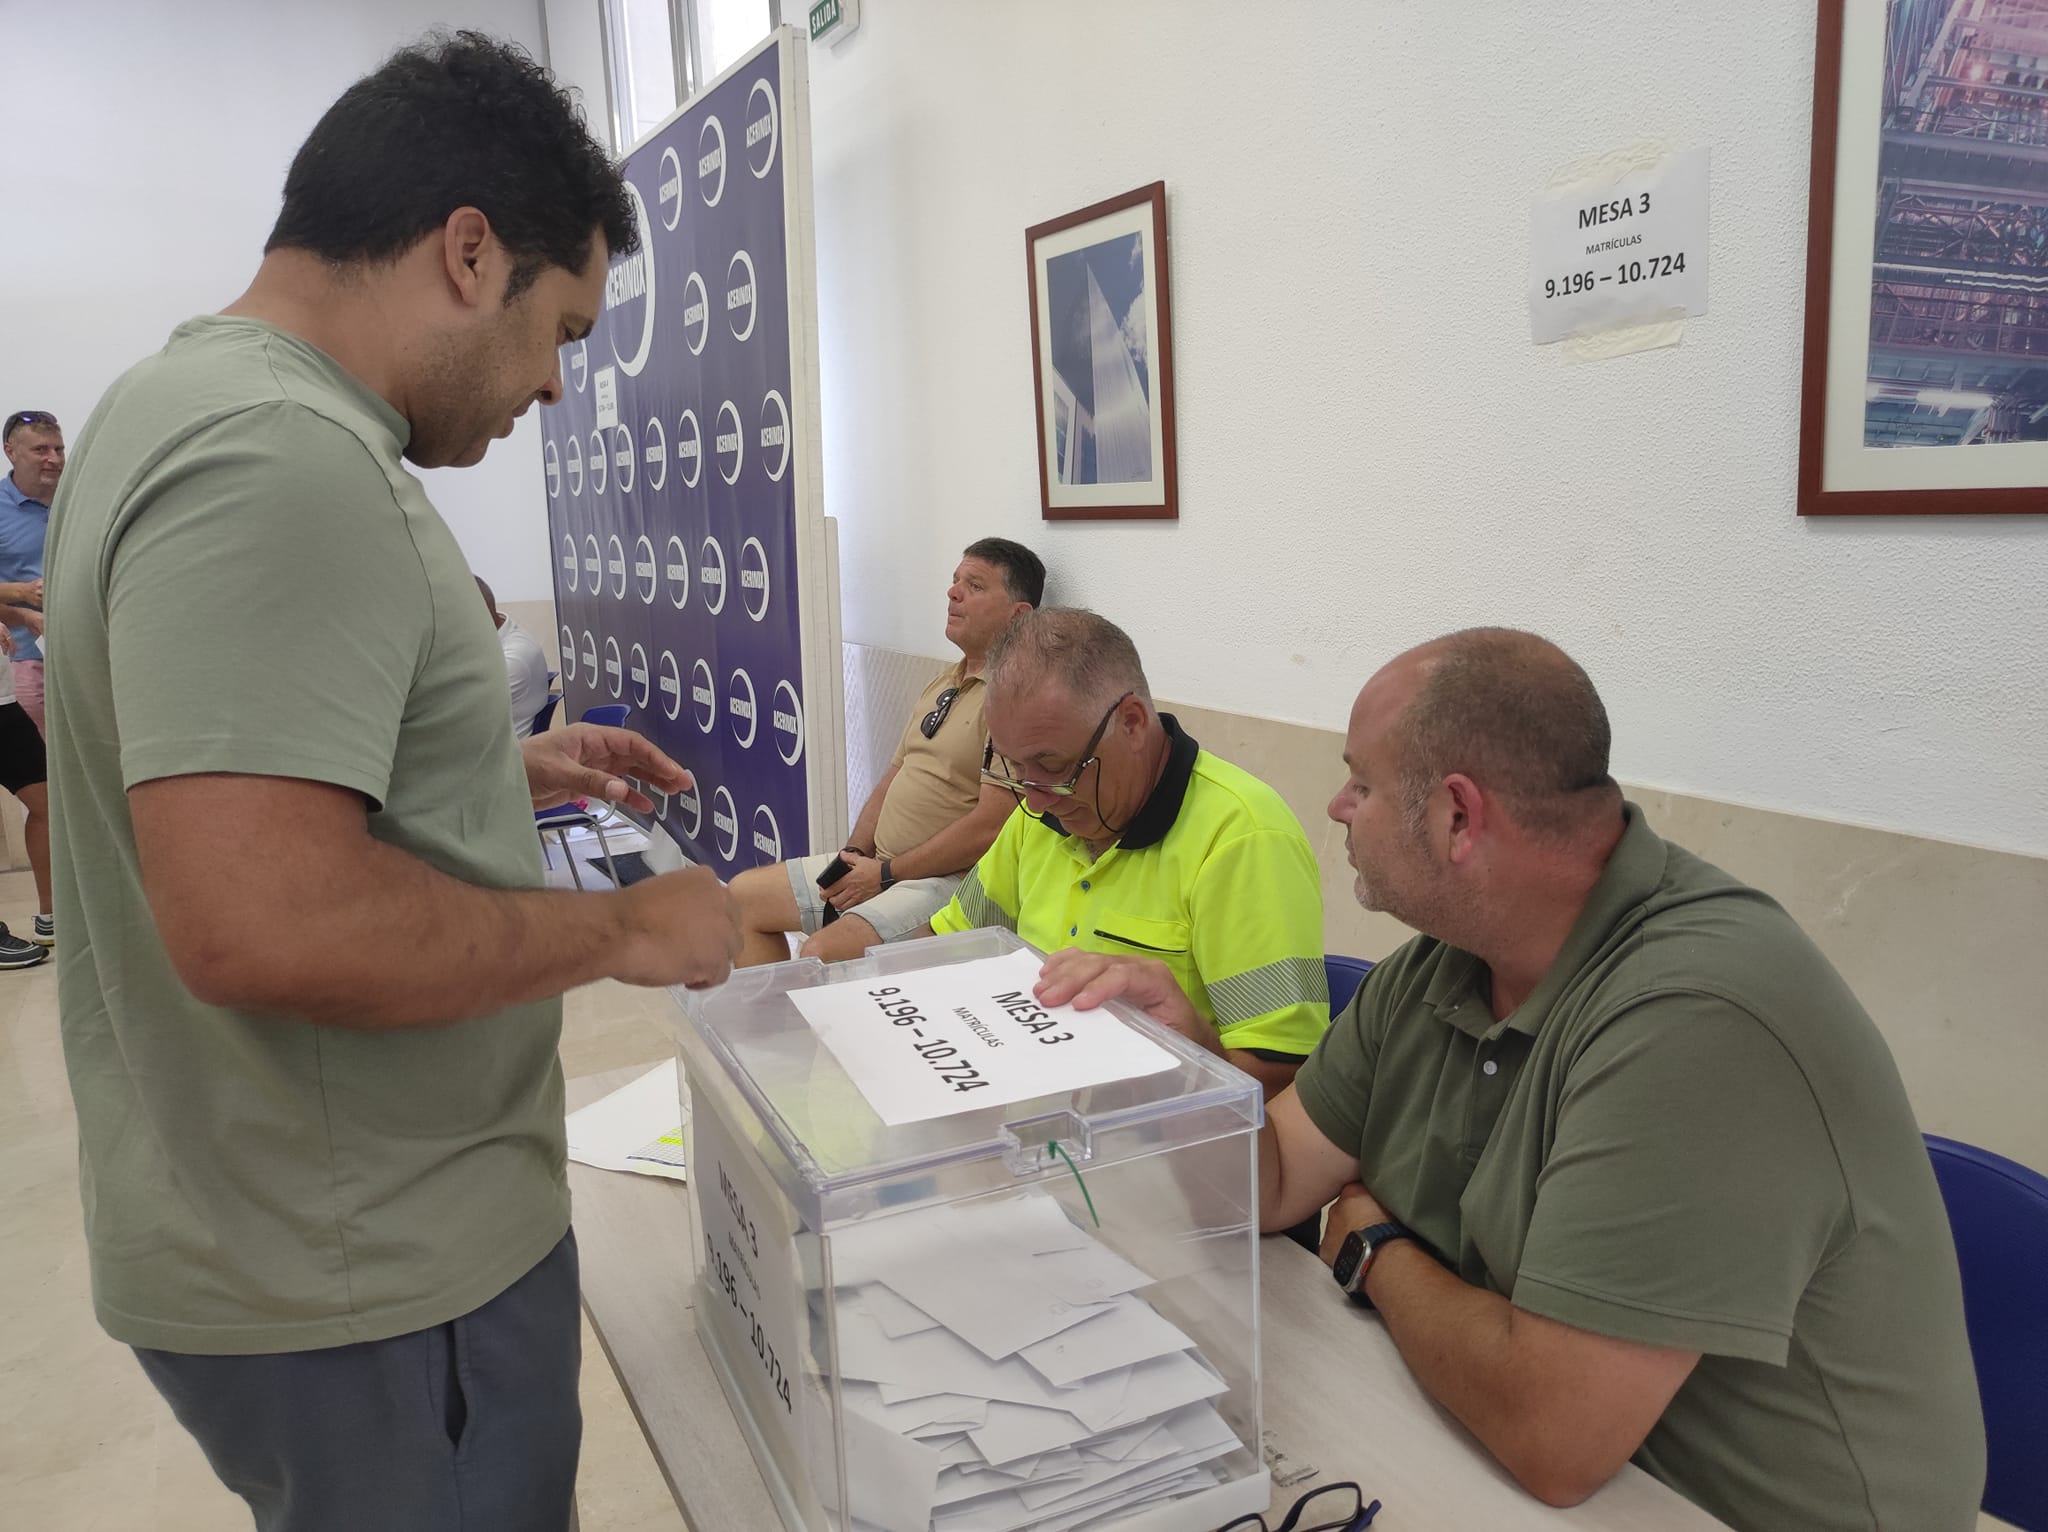 Un trabajador de Acerinox vota en una de las urnas dispuestas. Foto: M.A.B /8Directo